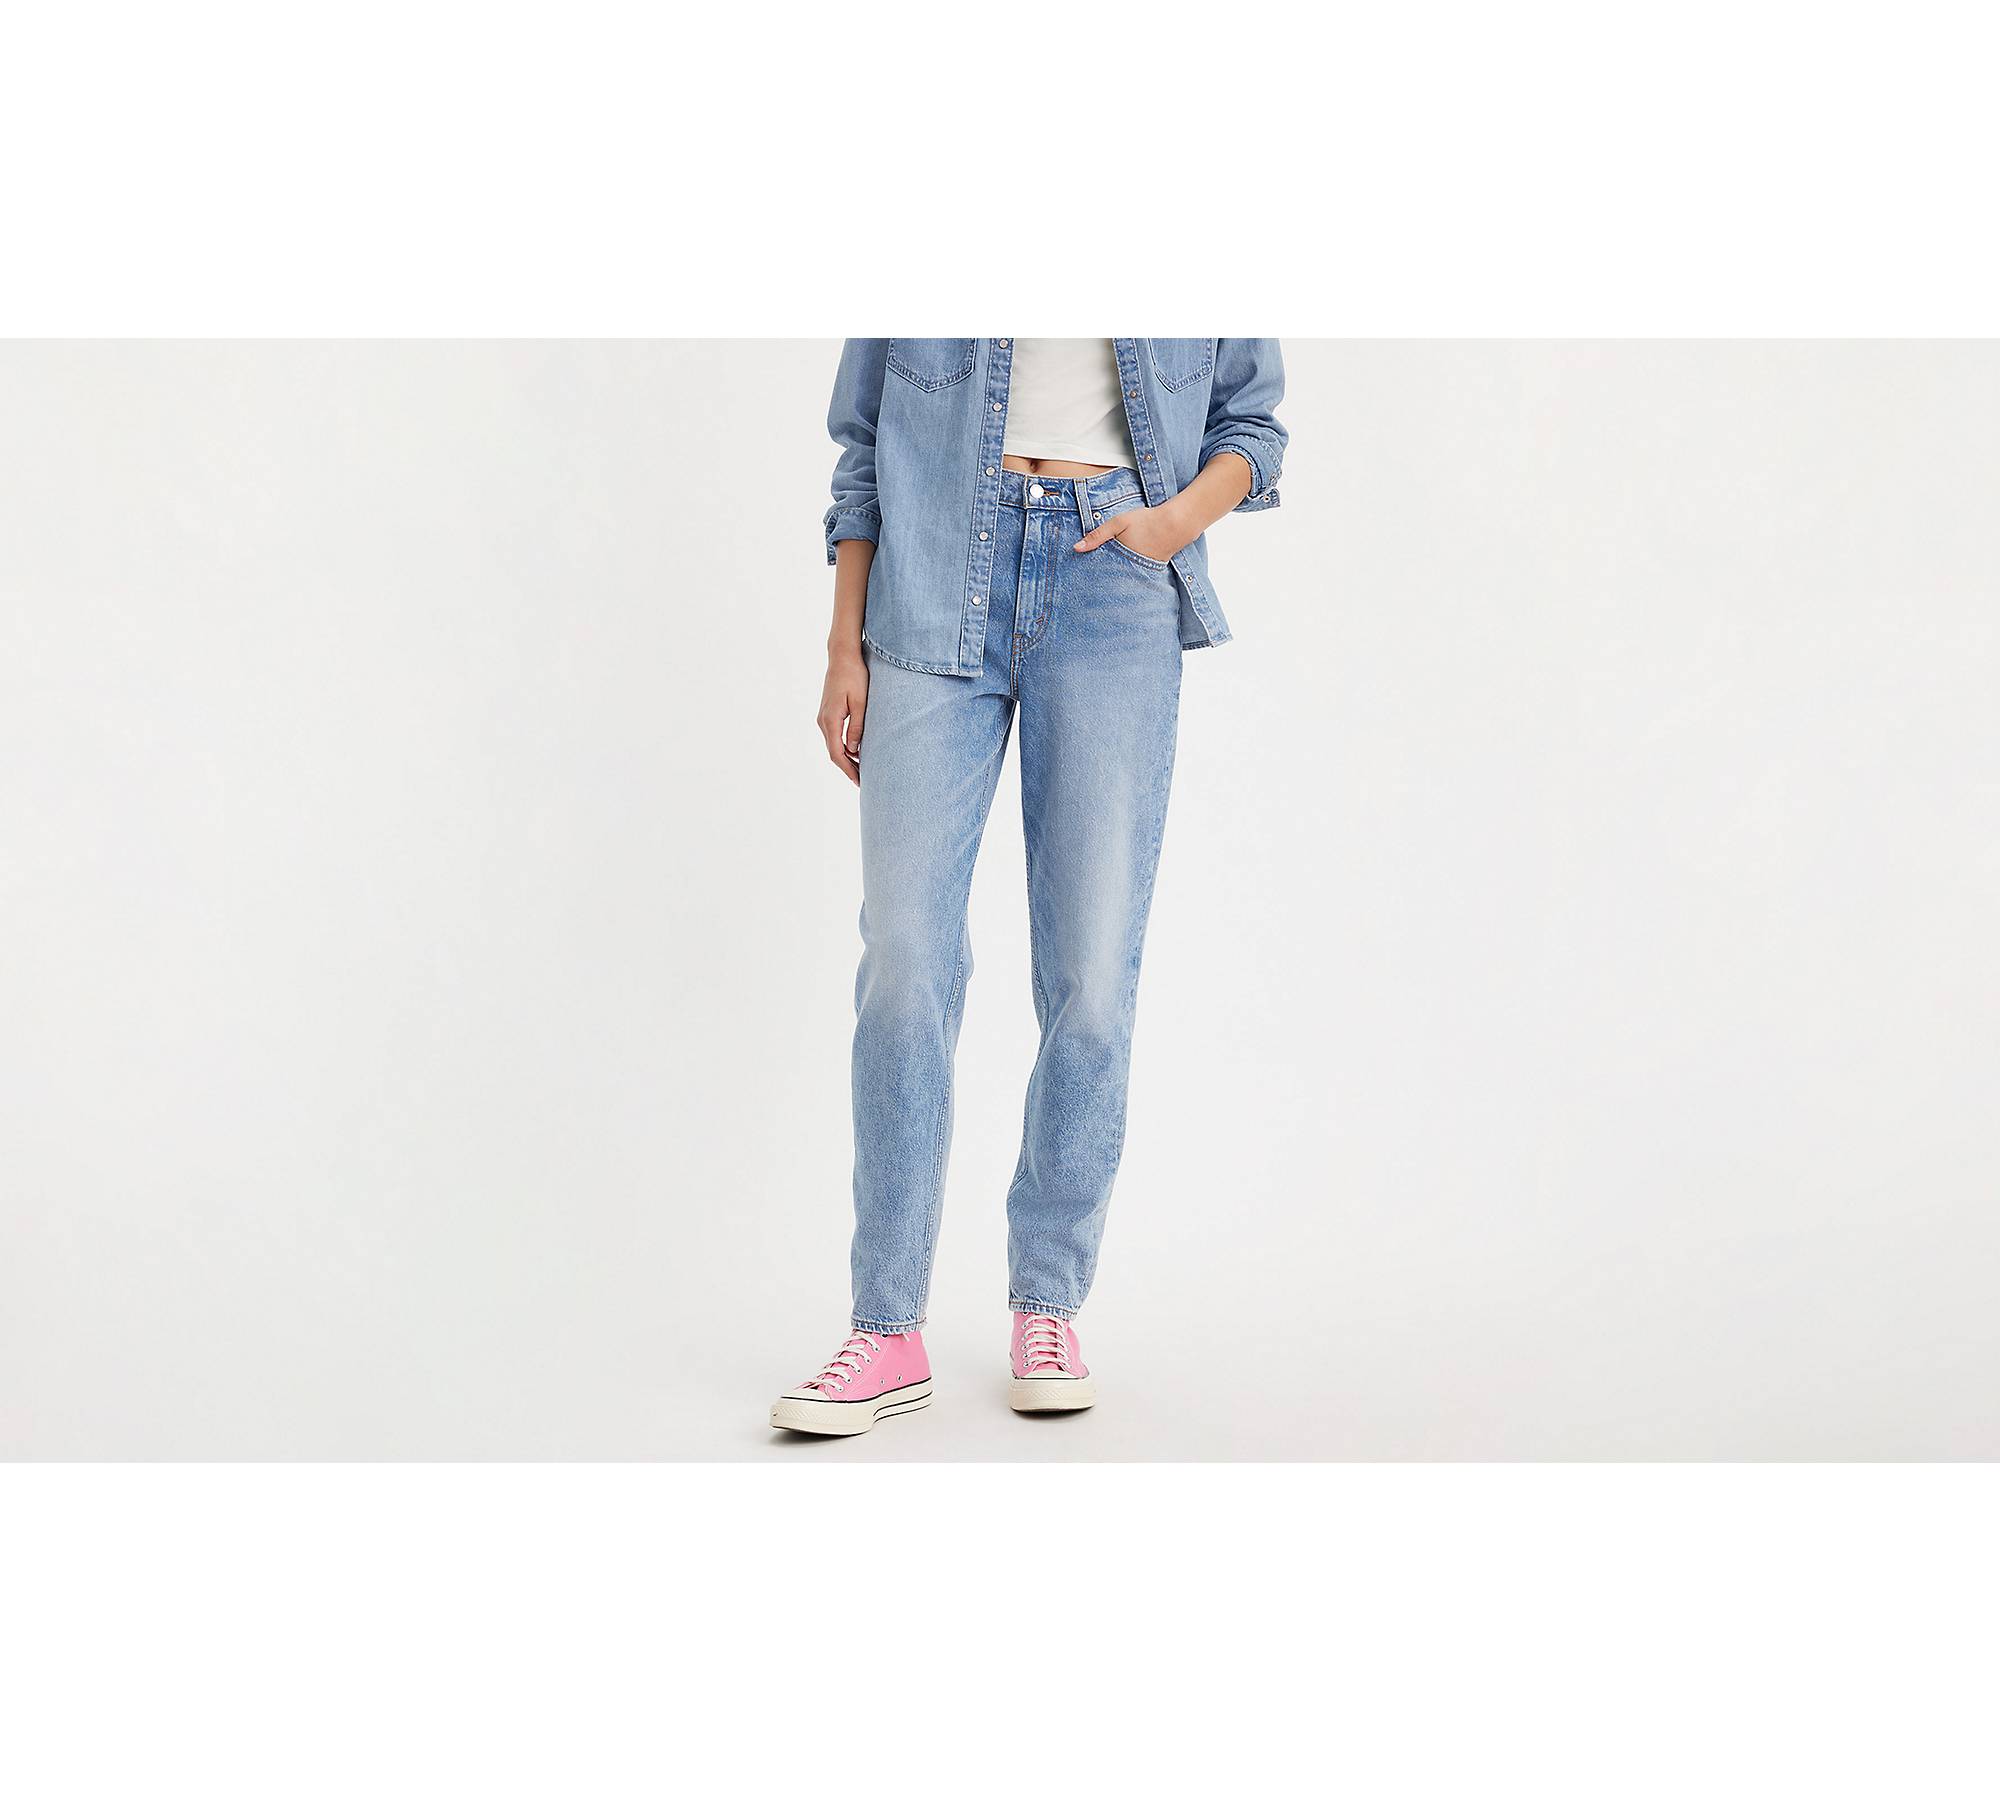 Levi's Plus 80's mom jeans in dark blue джинсы V68713769Цвет: RUNNING  ERRANDS; Размер: UK 16 купить по выгодной цене от 206 руб. в  интернет-магазине  с доставкой